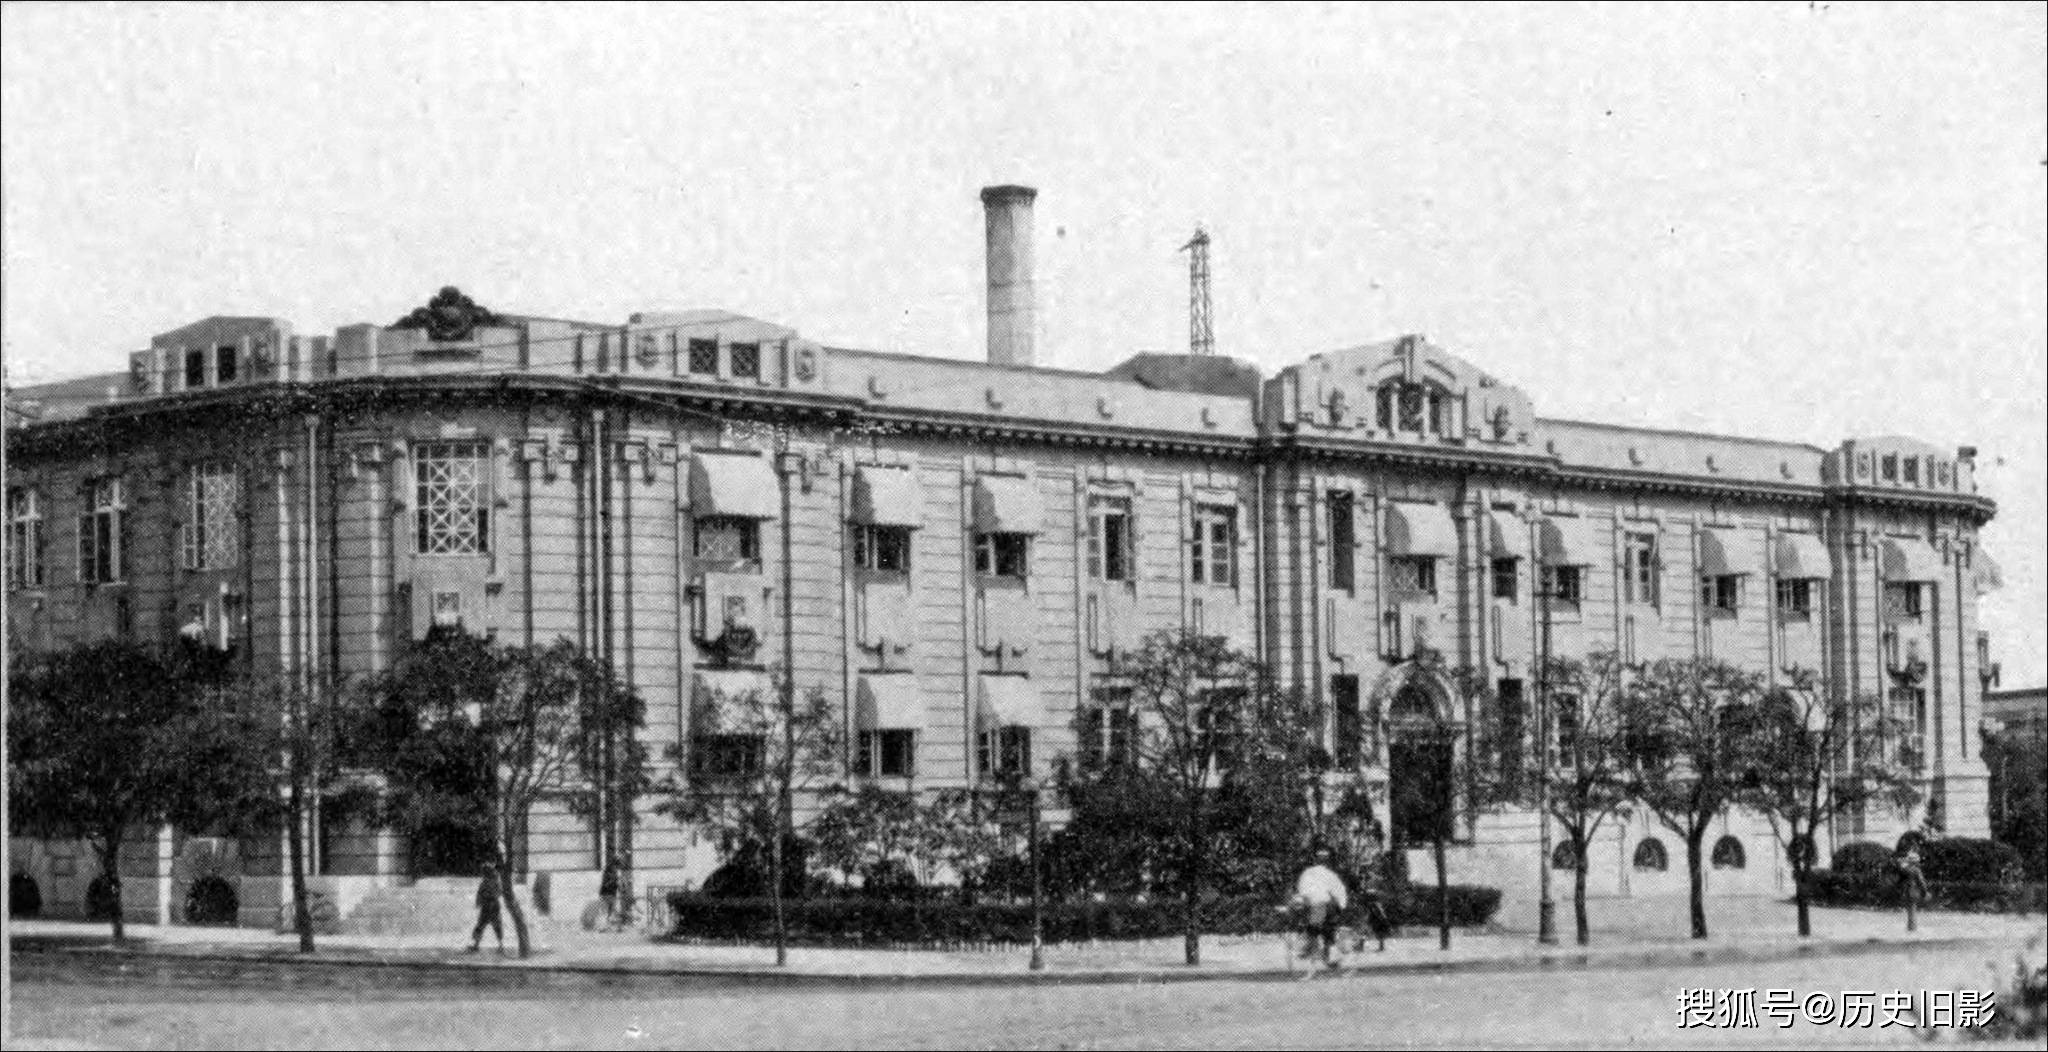 1929年大连老照片,大连证券交易所与大连朝鲜银行